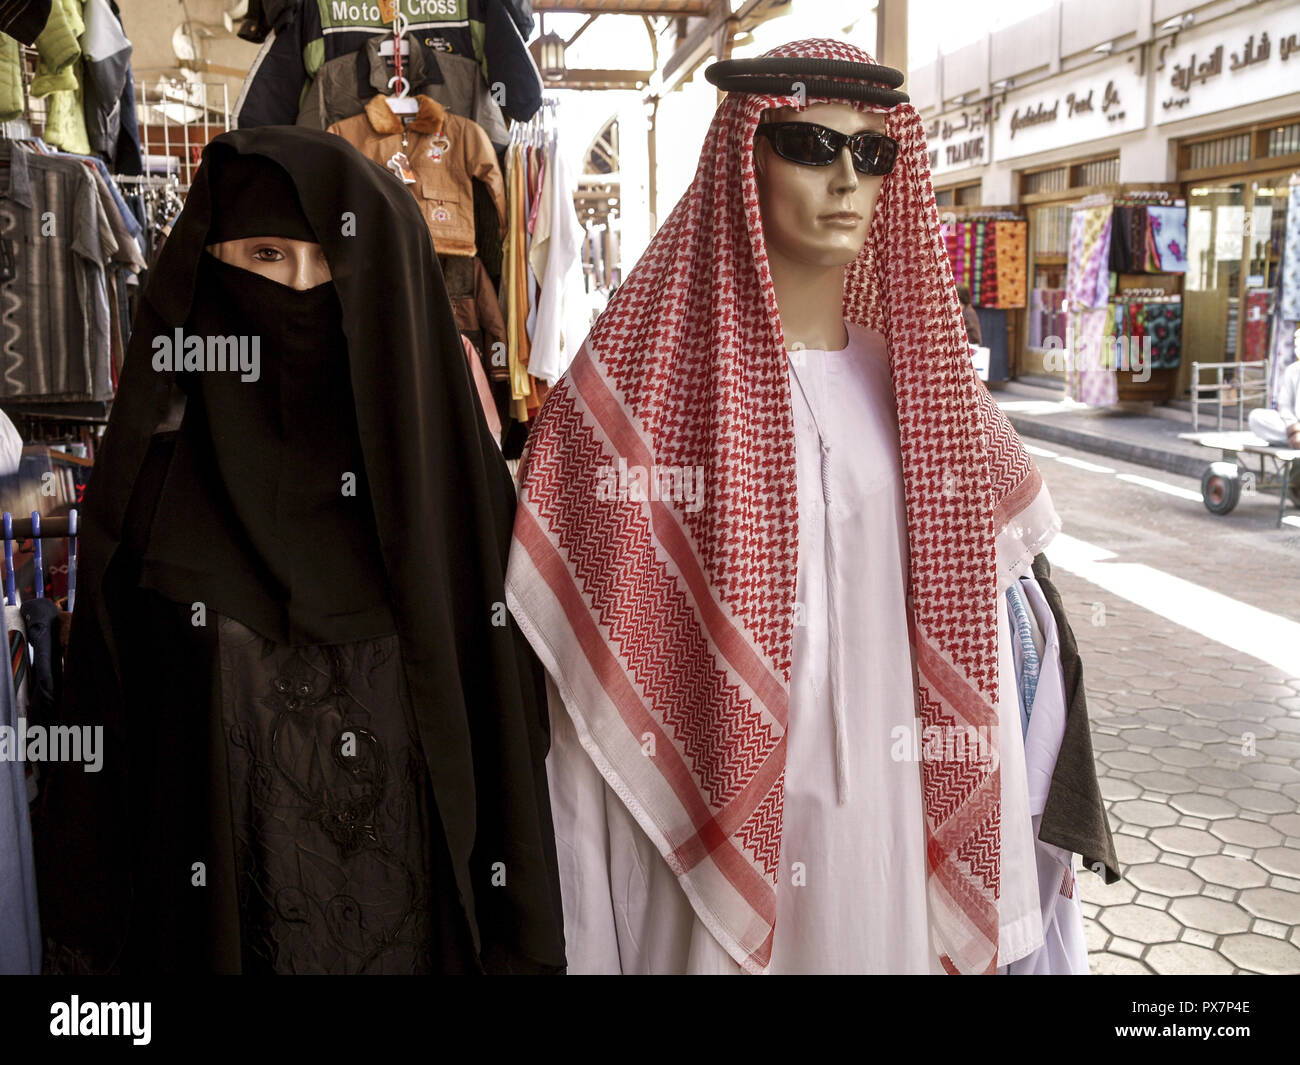 sheik clothing